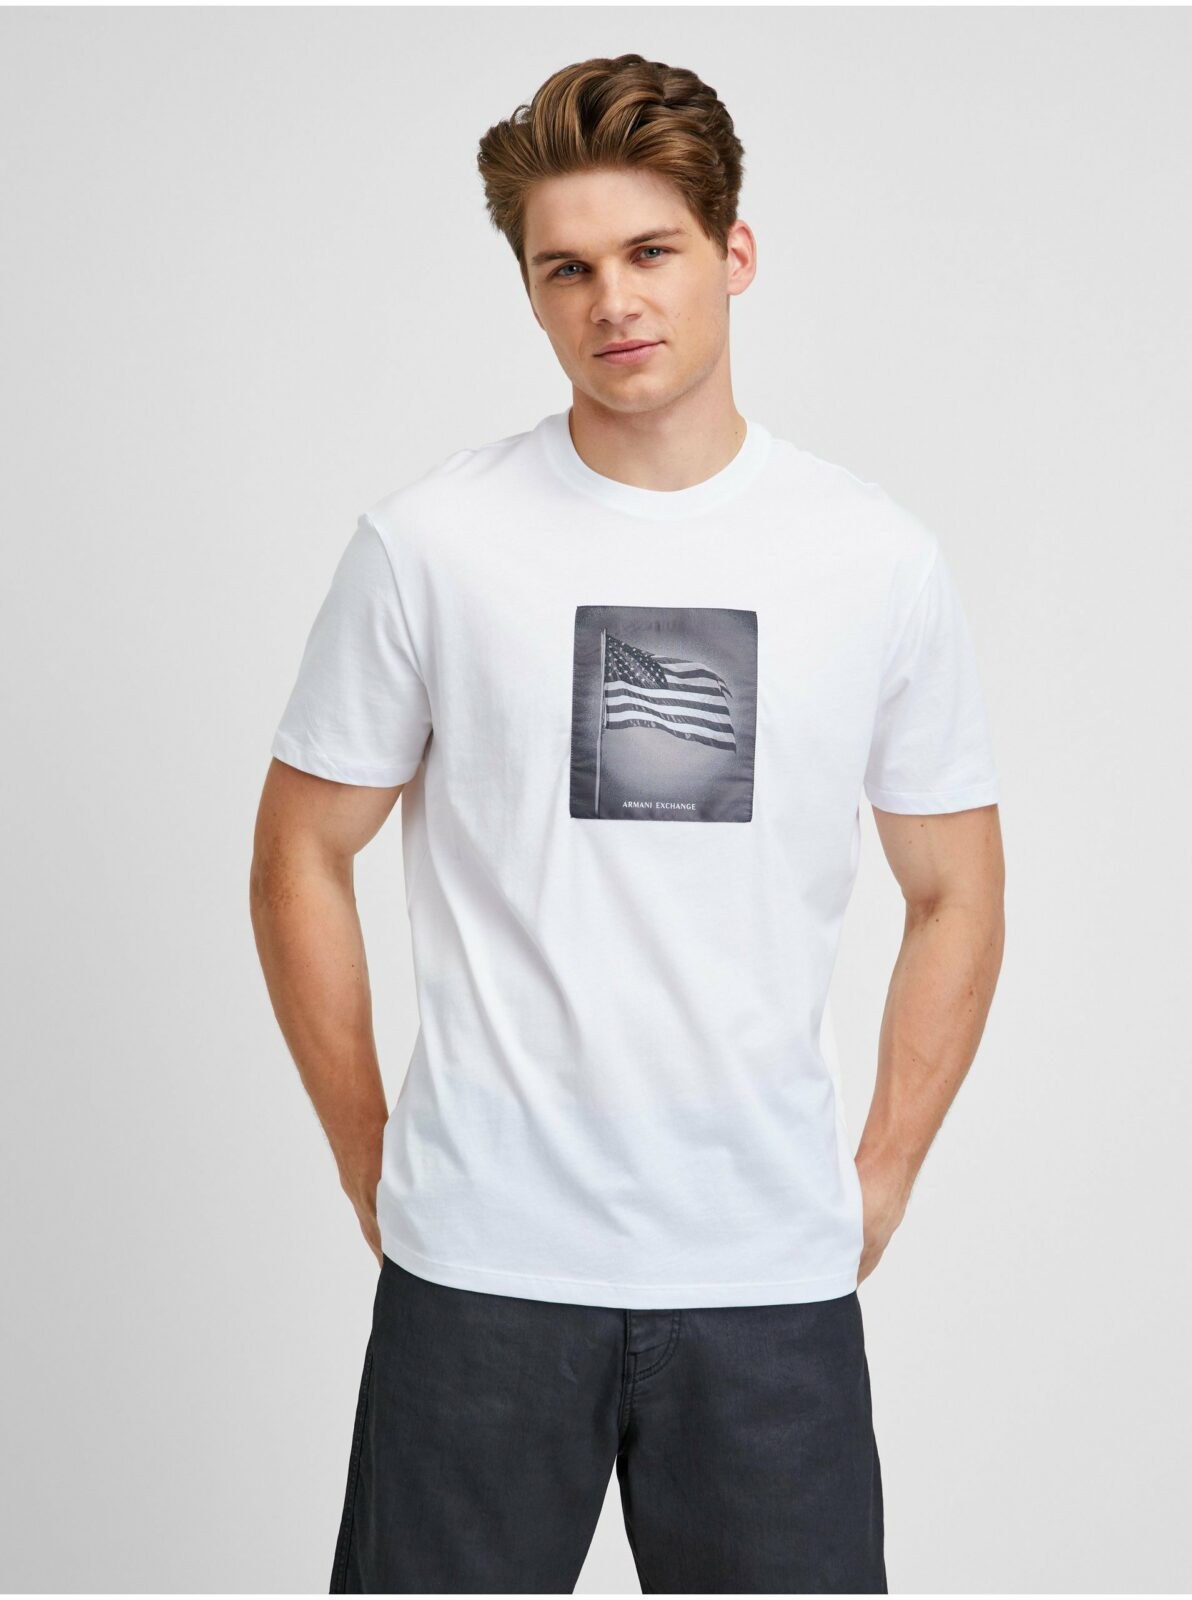 Bílé pánské tričko Armani Exchange